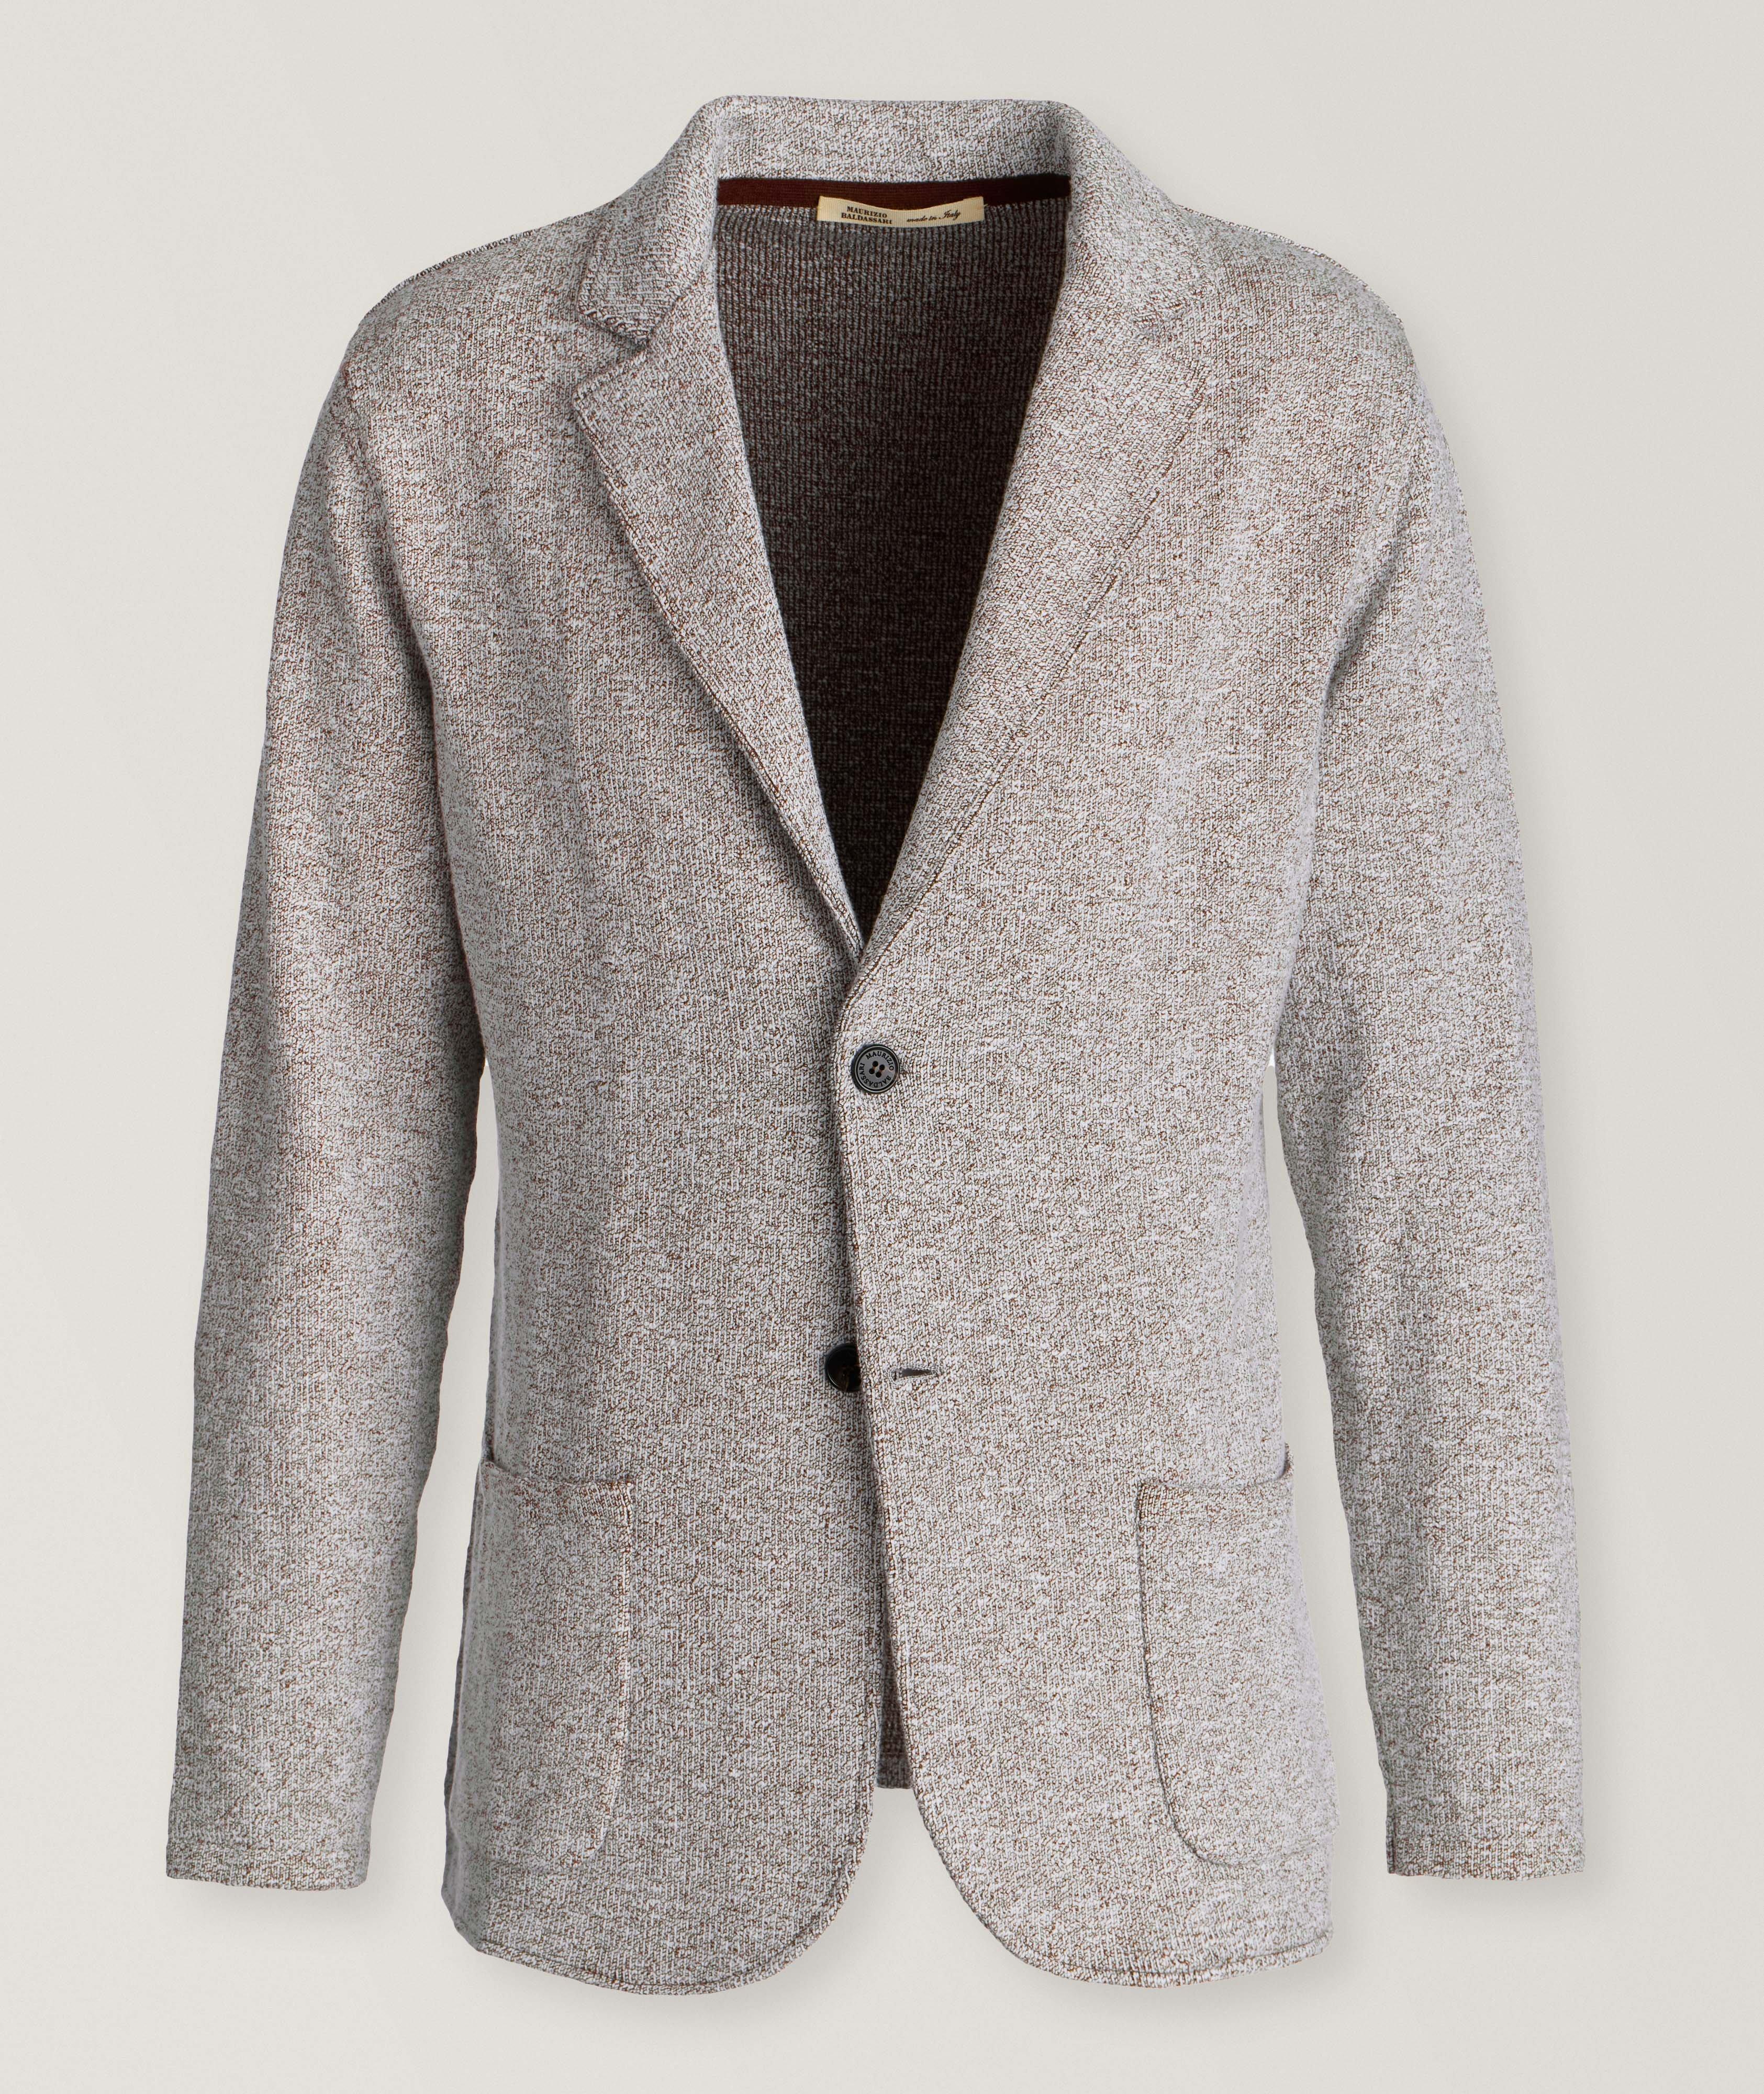 Mélange Cotton-Blend Knitted Sport Jacket  image 0